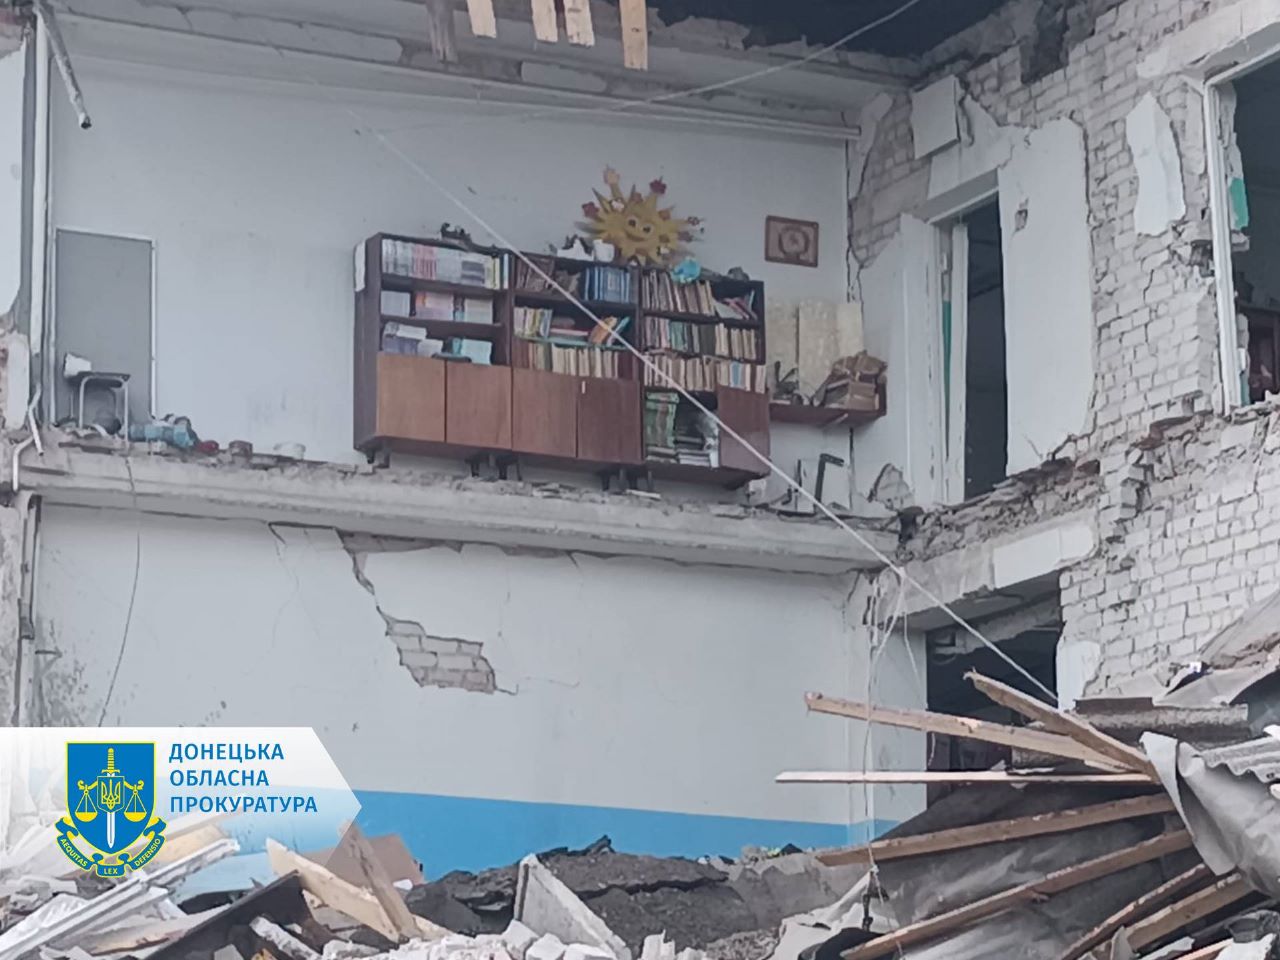 Зруйнована школа в селі Сергіївка Донецької області. Фото: Донецька обласна прокуратура